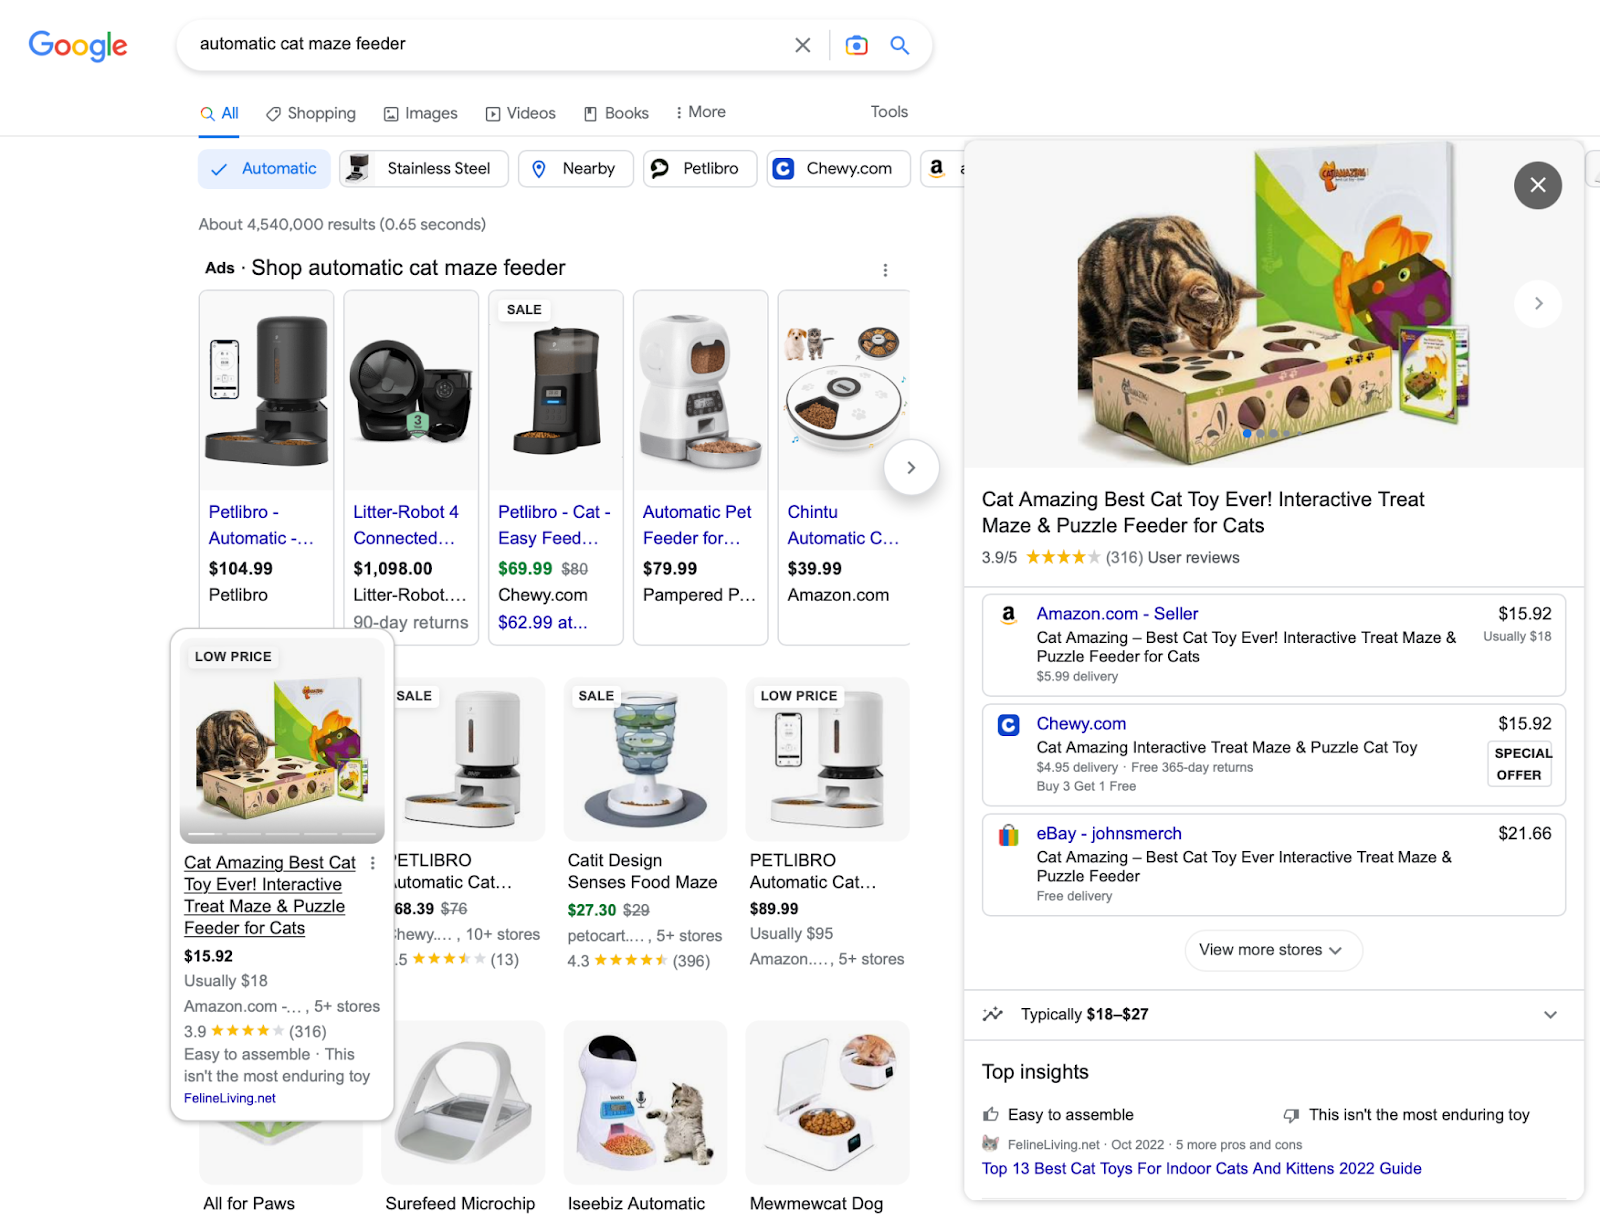 Скриншот для поискового запроса «автоматическая кормушка для кошек в лабиринте» в Google